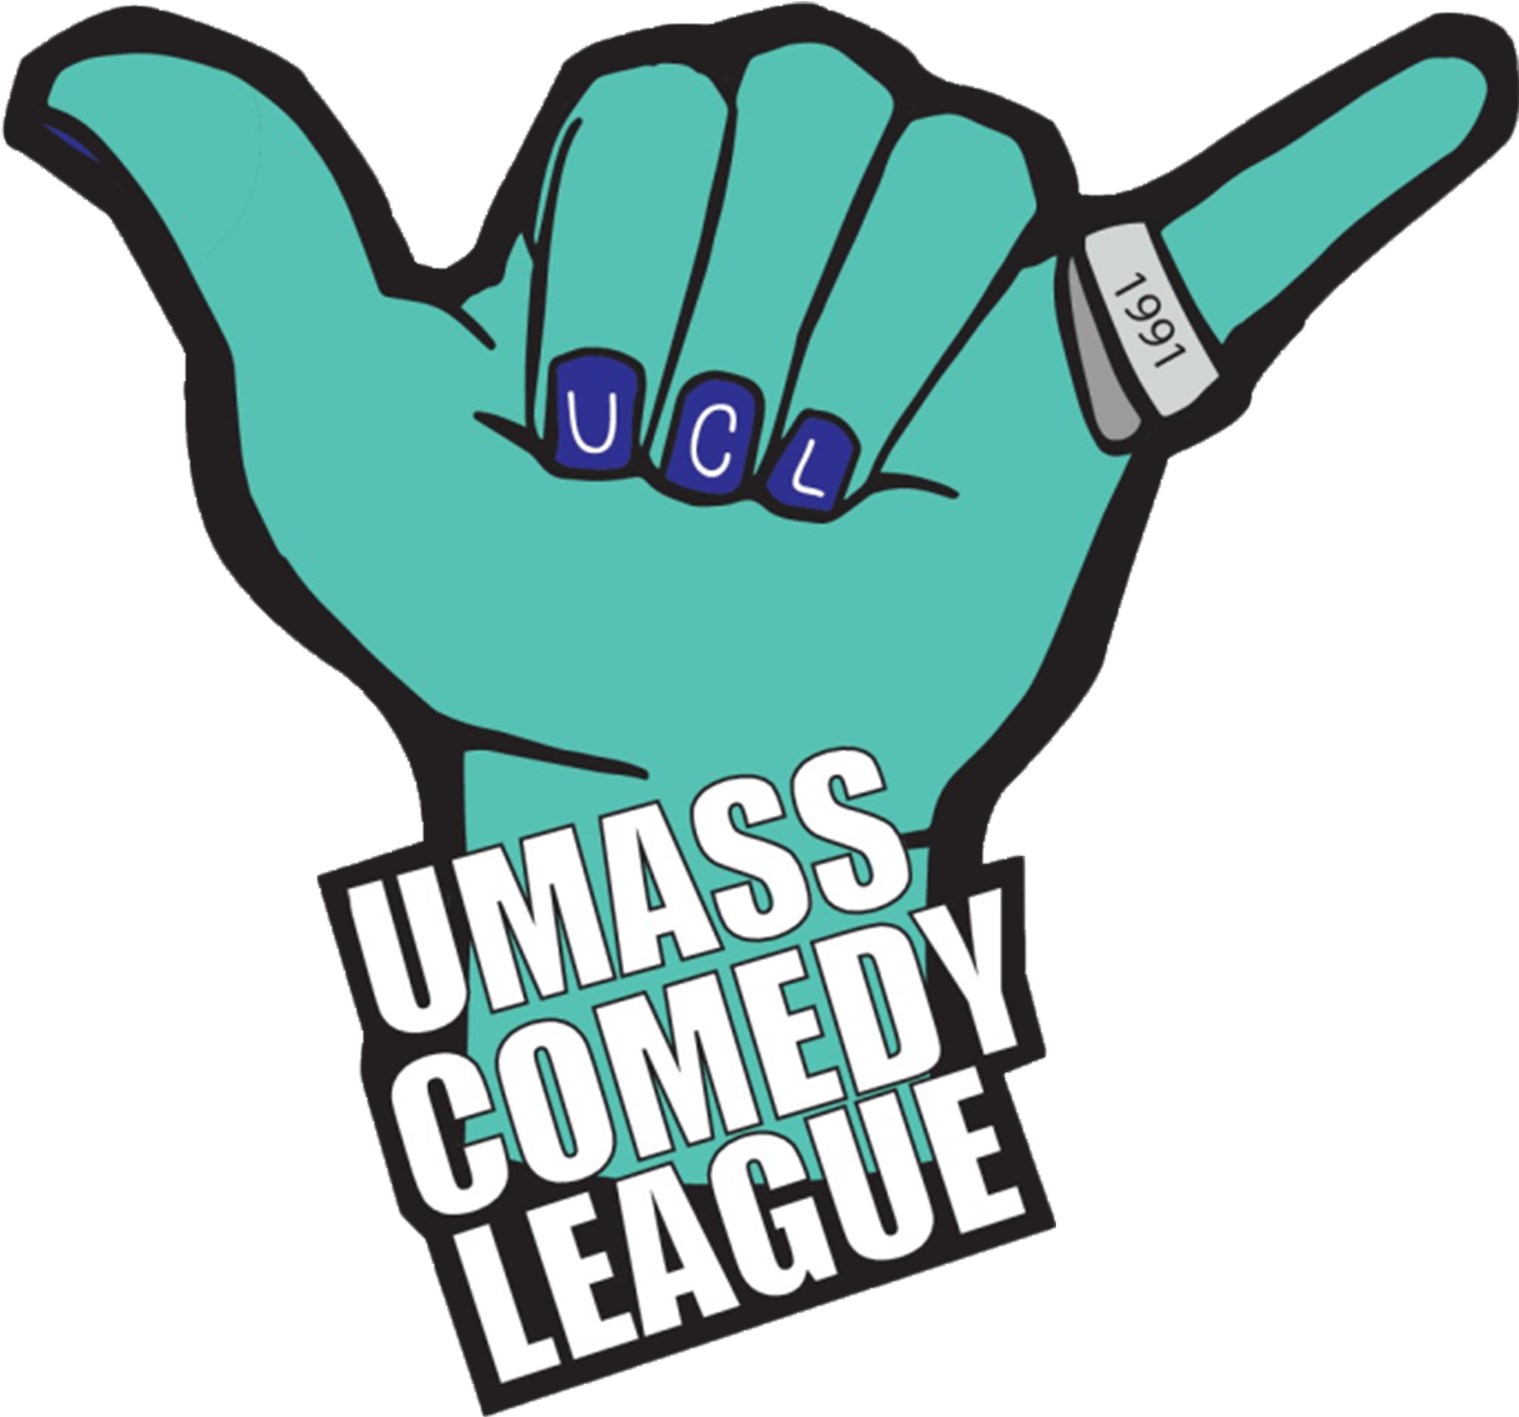 Umass Comedy League - Comedy (1706x1624)